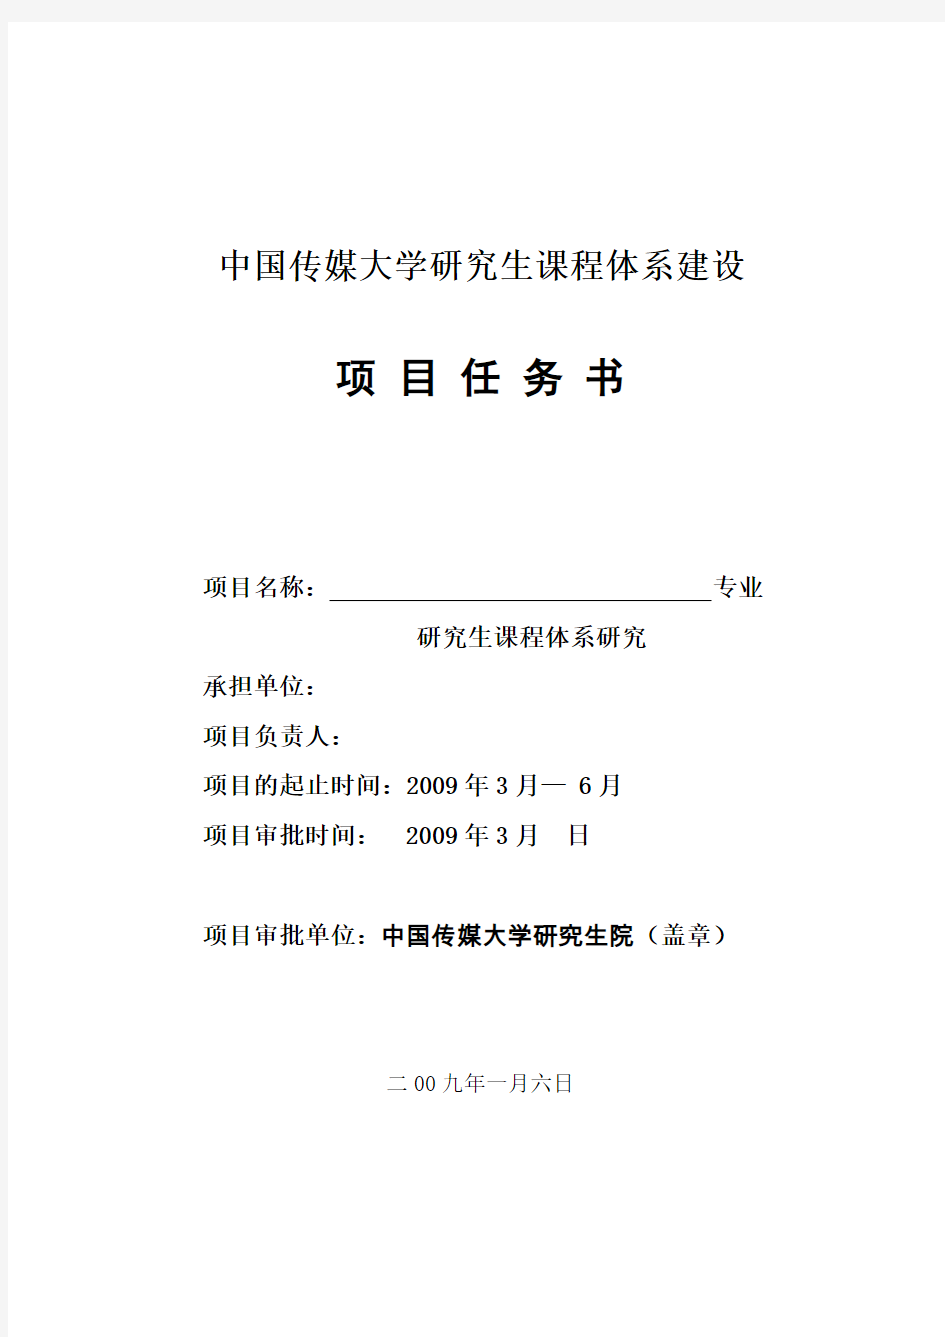 中国传媒大学研究生课程体系建设.